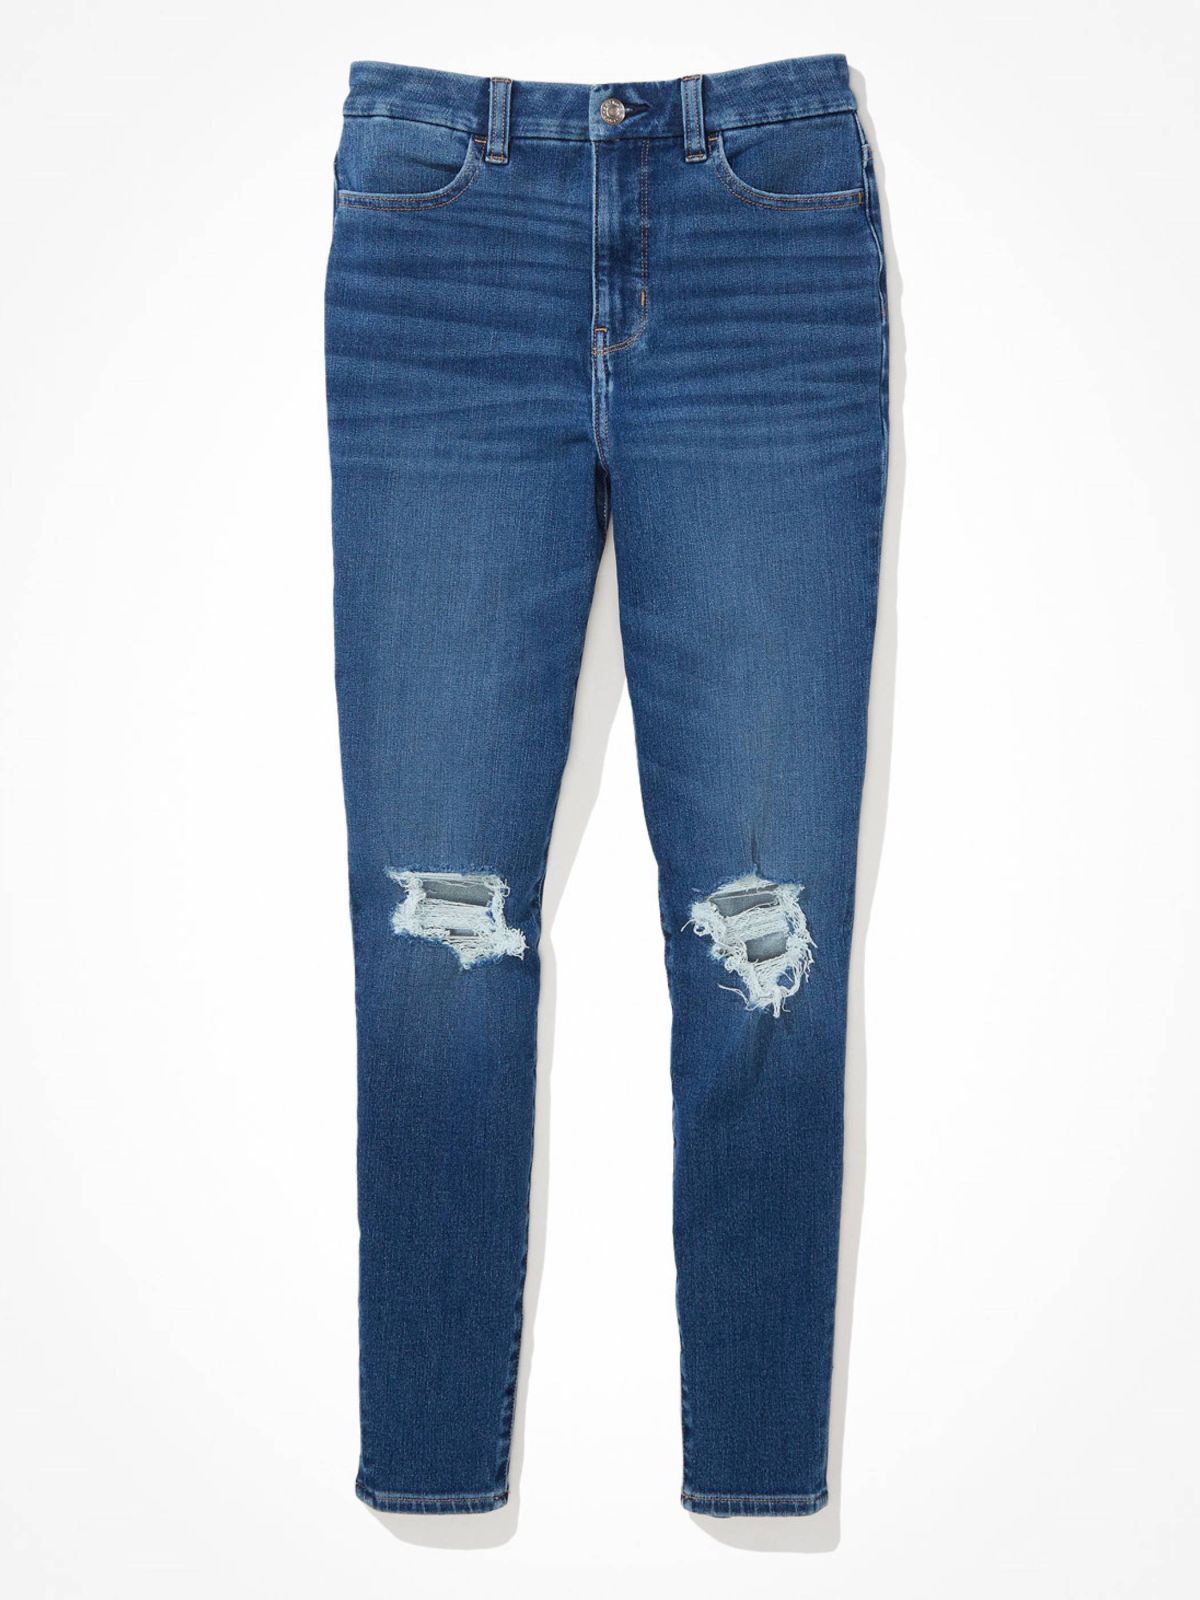  ג'ינס עם קרעים בגזרת Curvy Hi-Rise של AMERICAN EAGLE